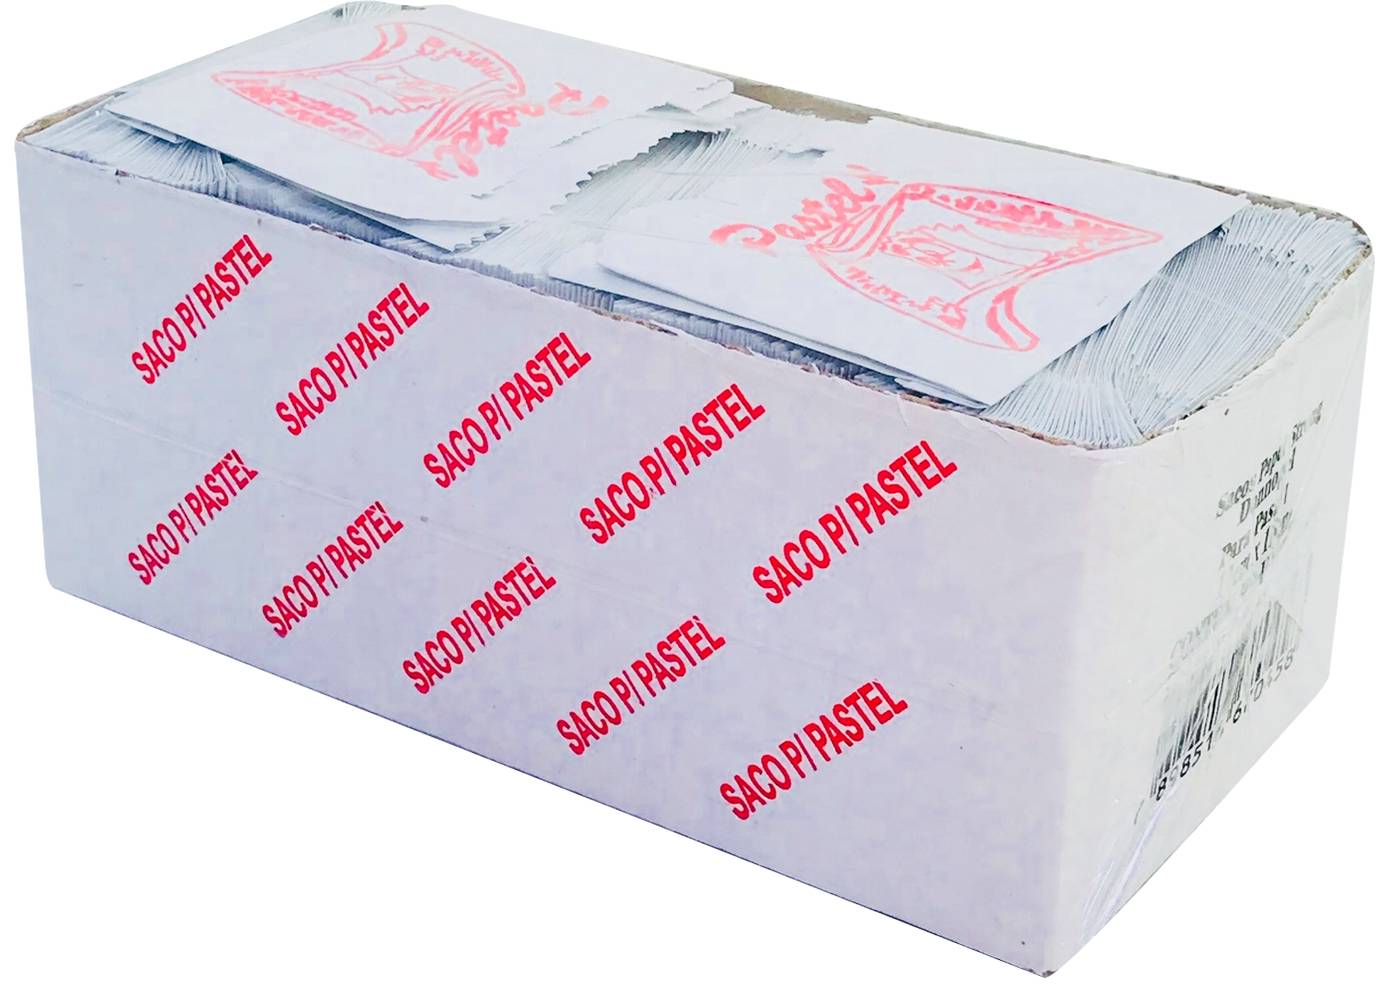 Donnopel saco de papel branco (500 unidades)